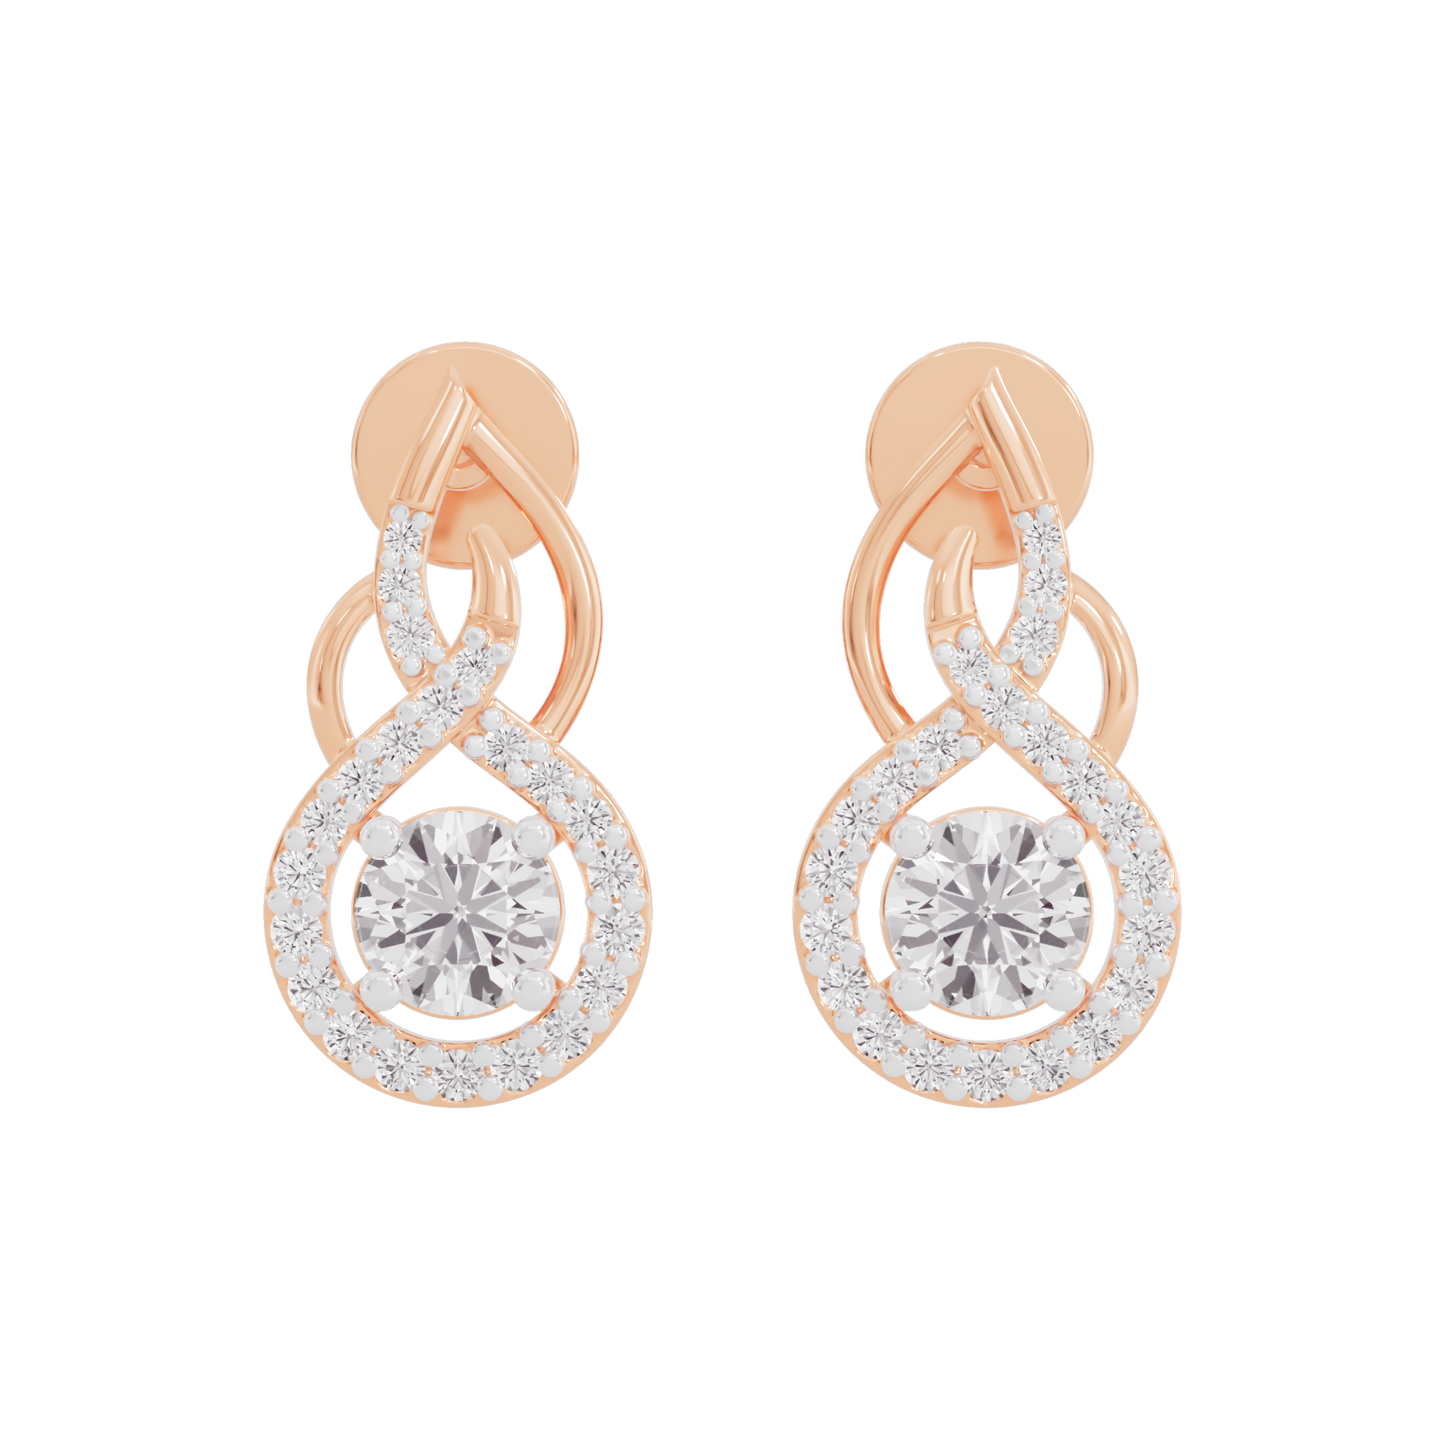 Celestial Serenity Diamond Earrings